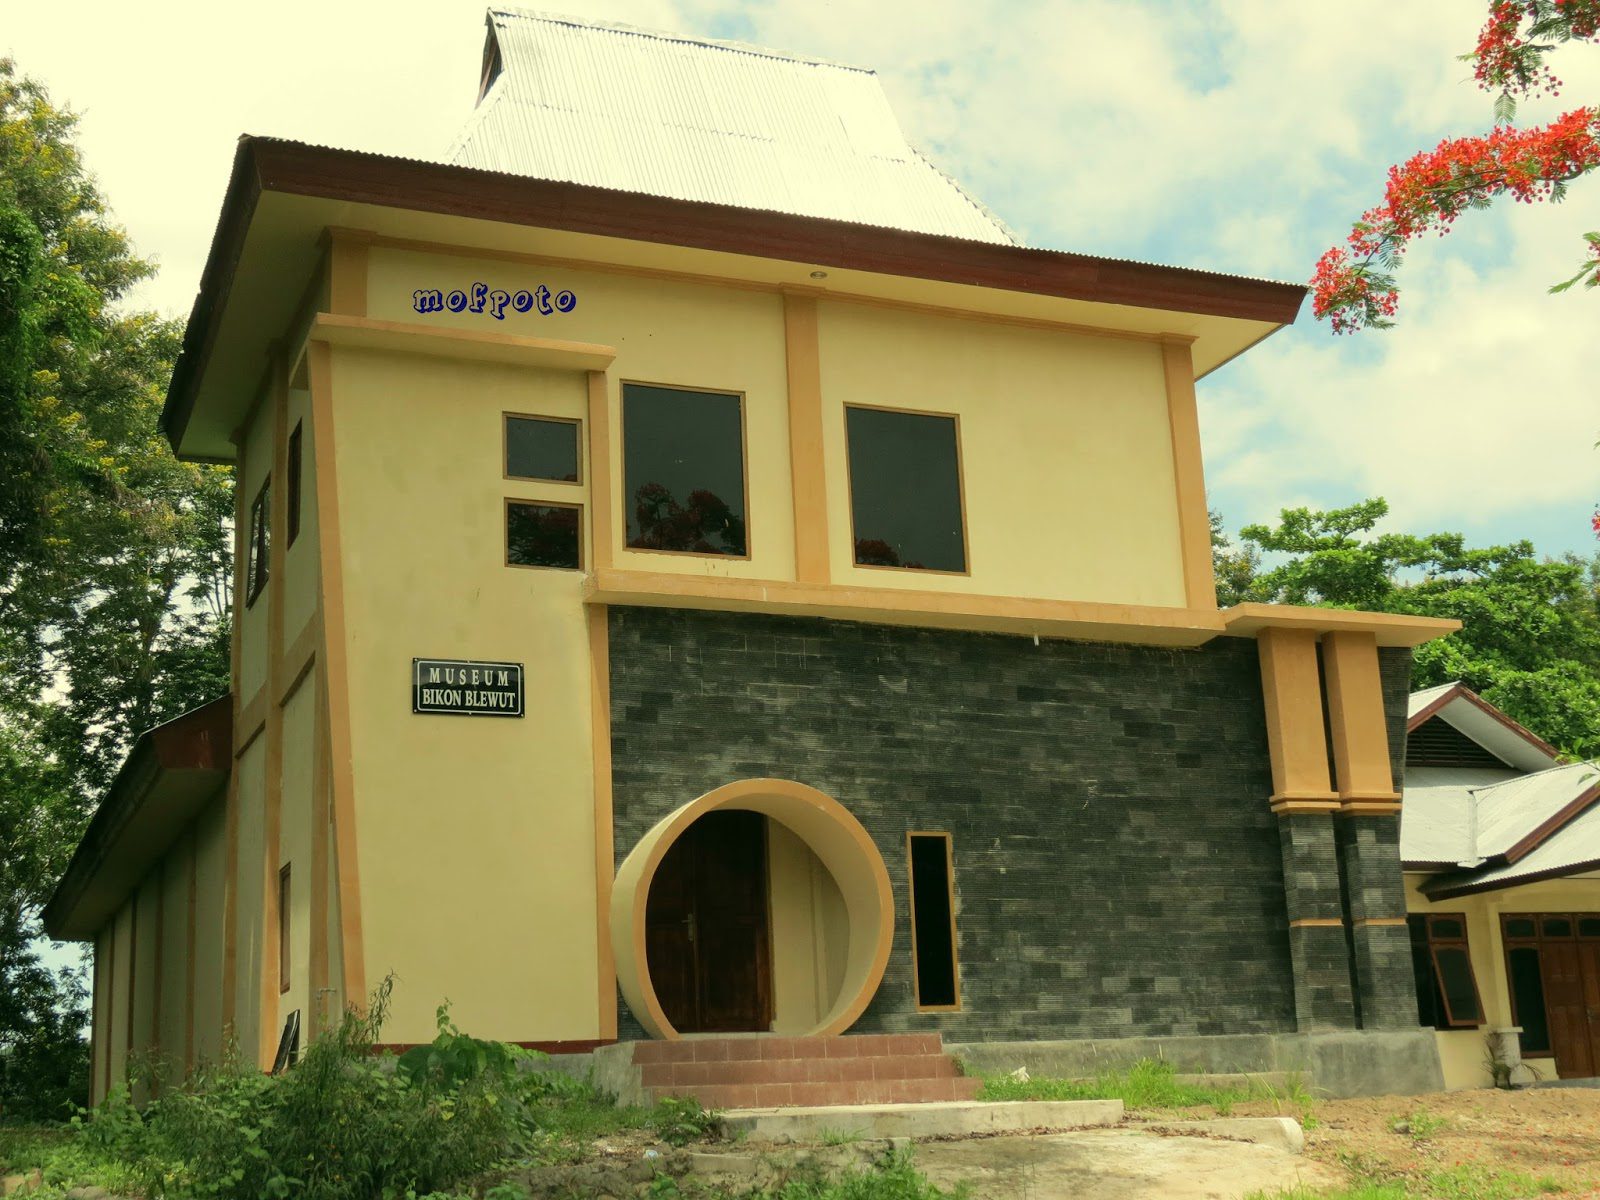 Museum Bikon Blewut Sikka, Mengungkap Peradaban Manusia Purba di Flores dan Nusa Tenggara